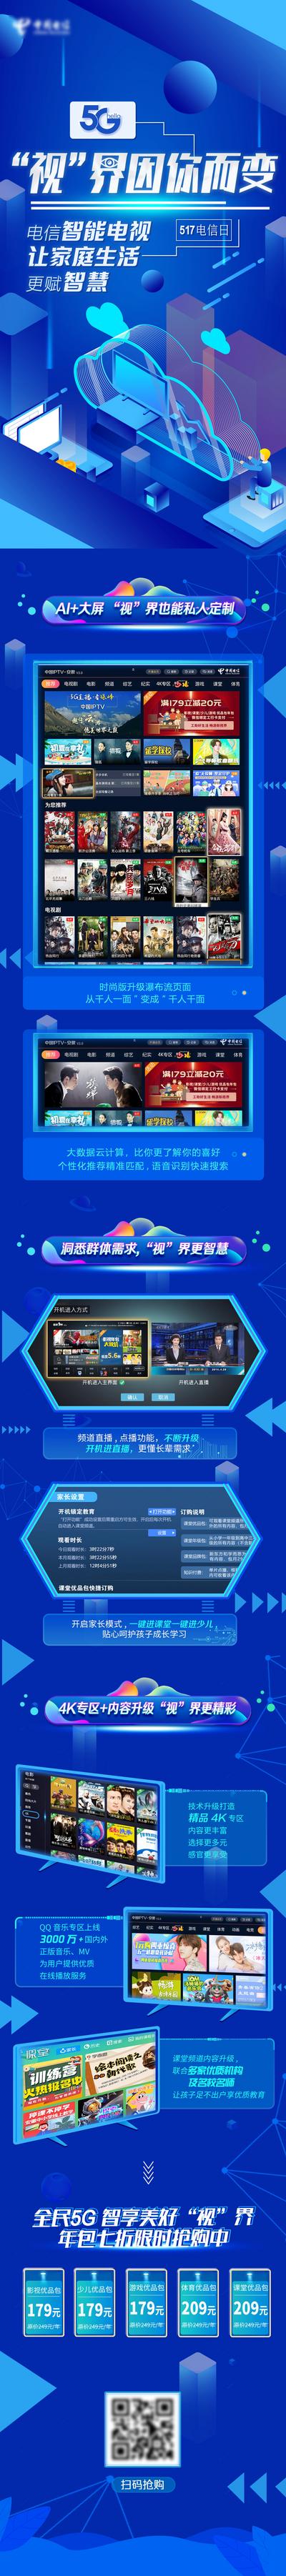 【南门网】海报 长图 通讯 5G 智能 电视 科技 蓝金